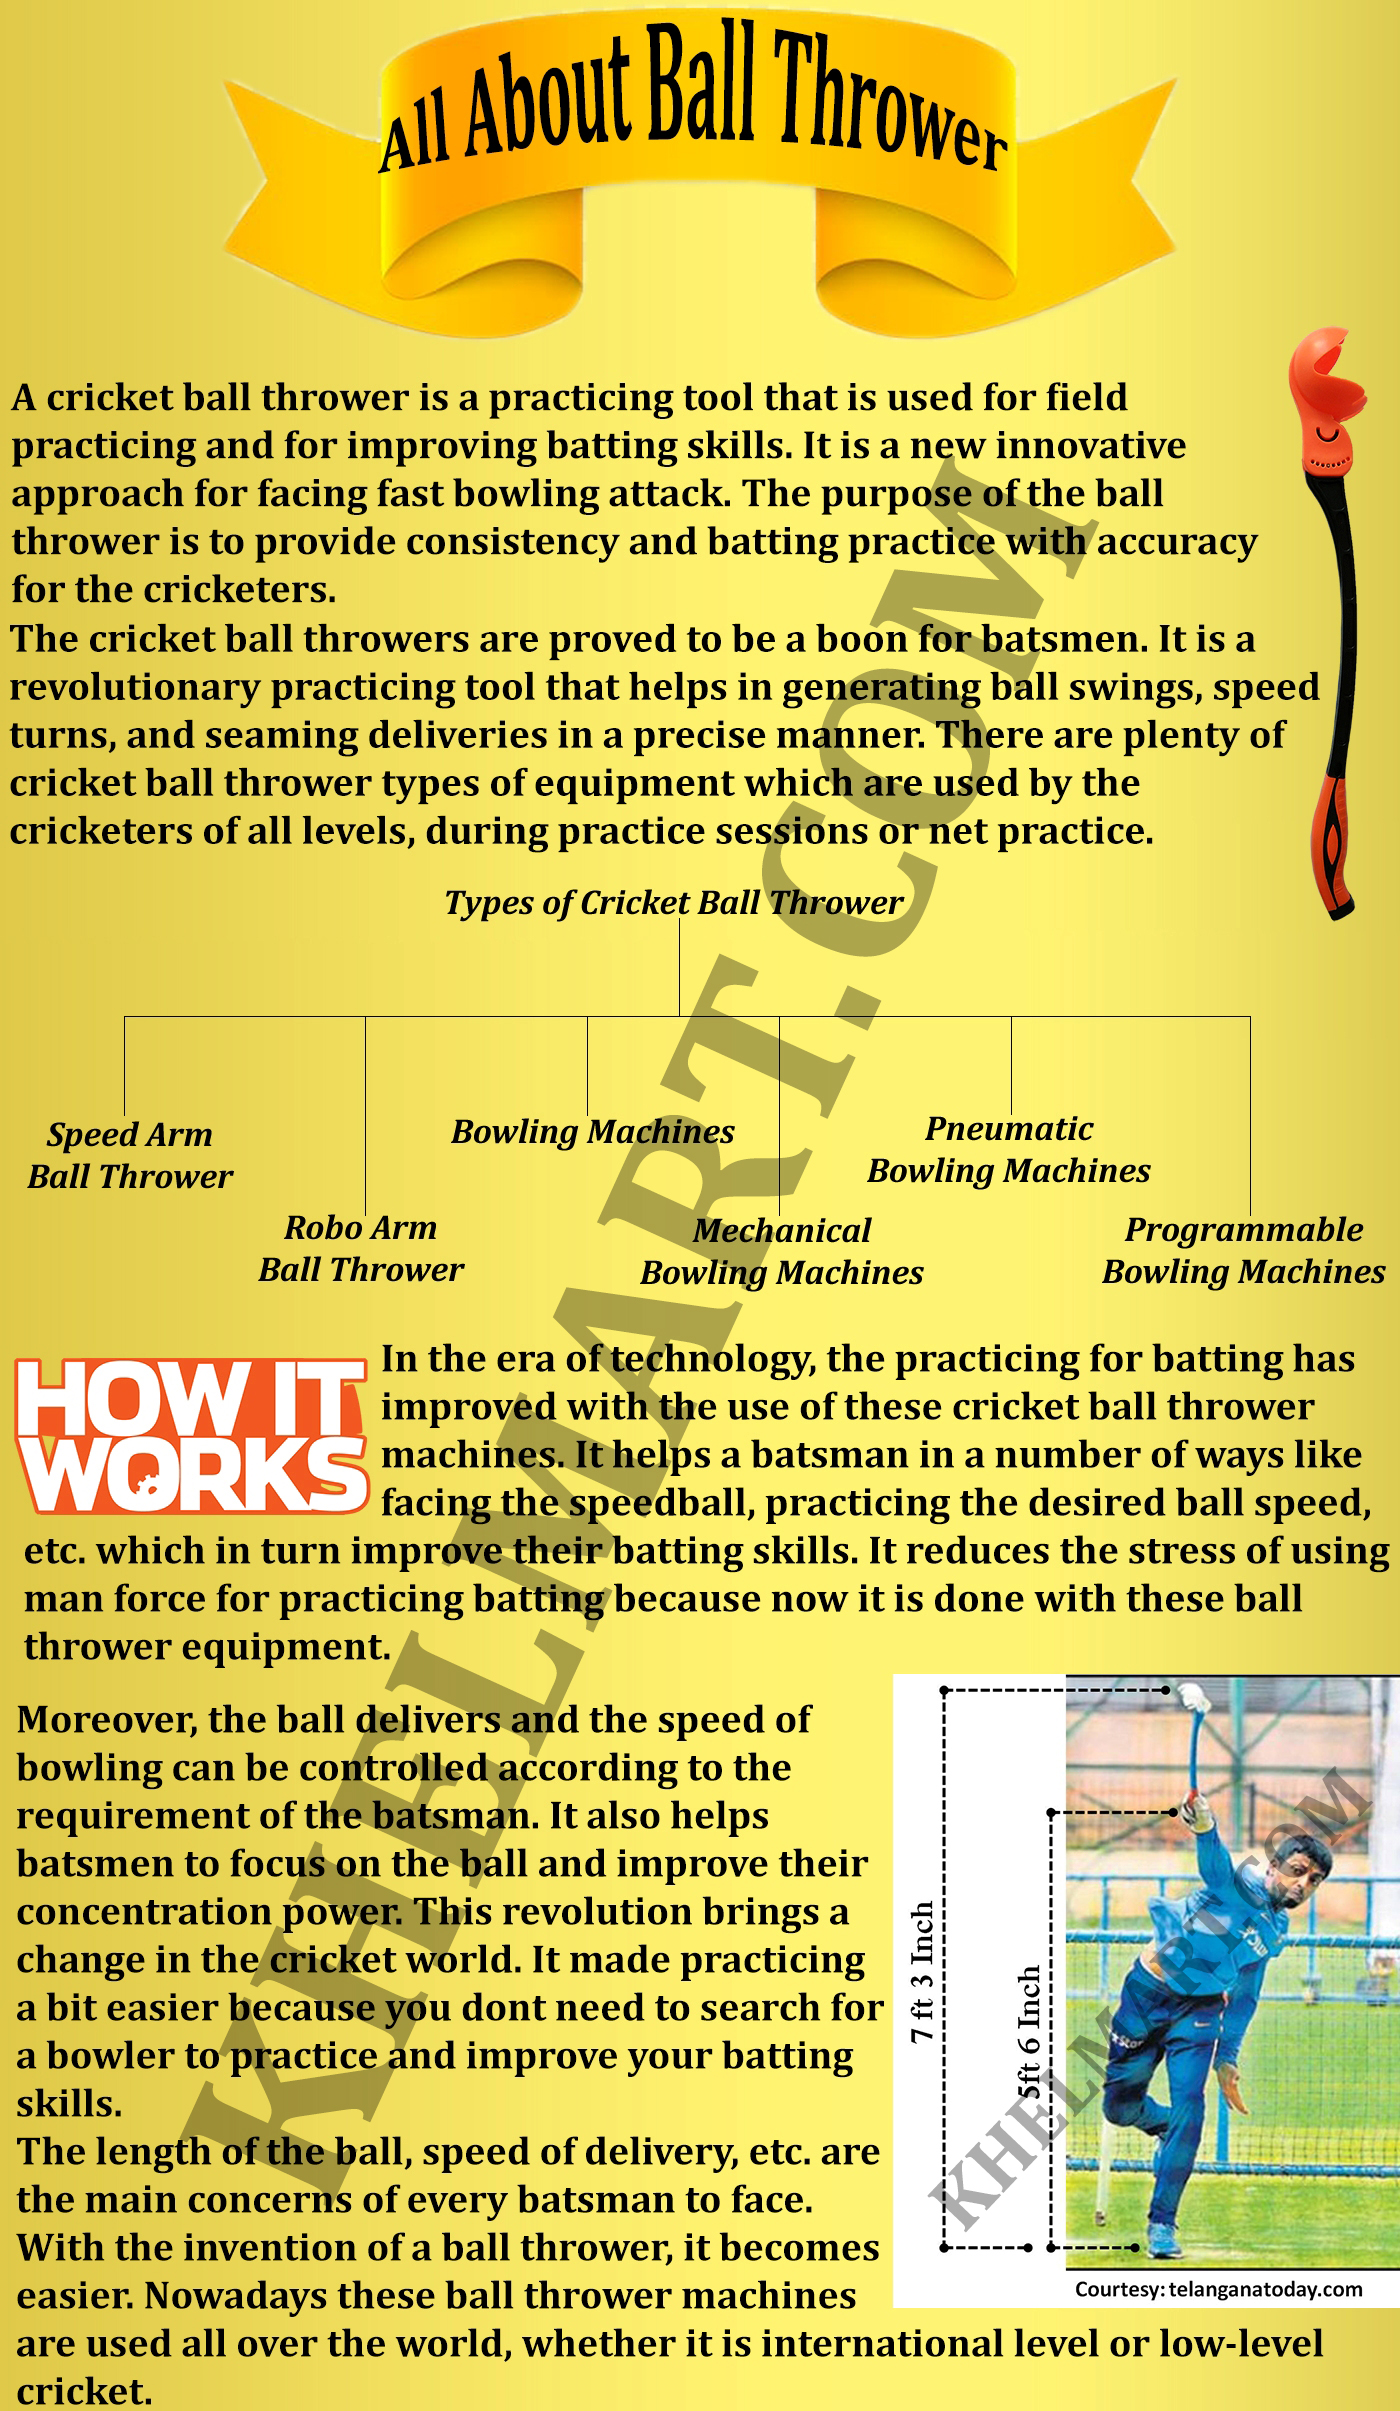 All_About_Cricket_Ball_Thrower_Khelmart